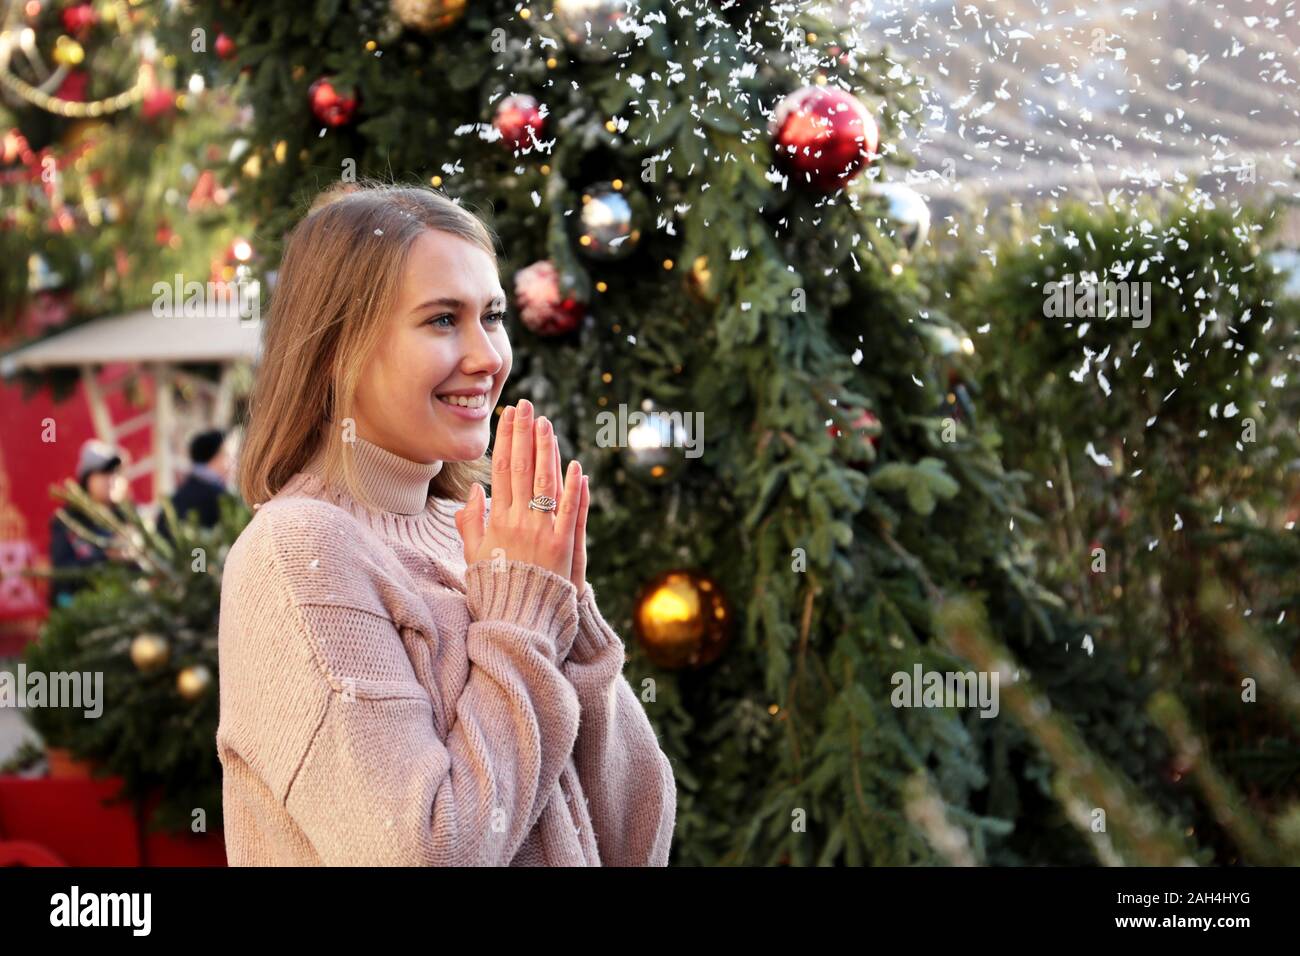 Happy girl laughing et jouit de la neige pendant l'article sur Nouvel An des arbres contexte au cours festival traditionnel Voyage à Noël Banque D'Images